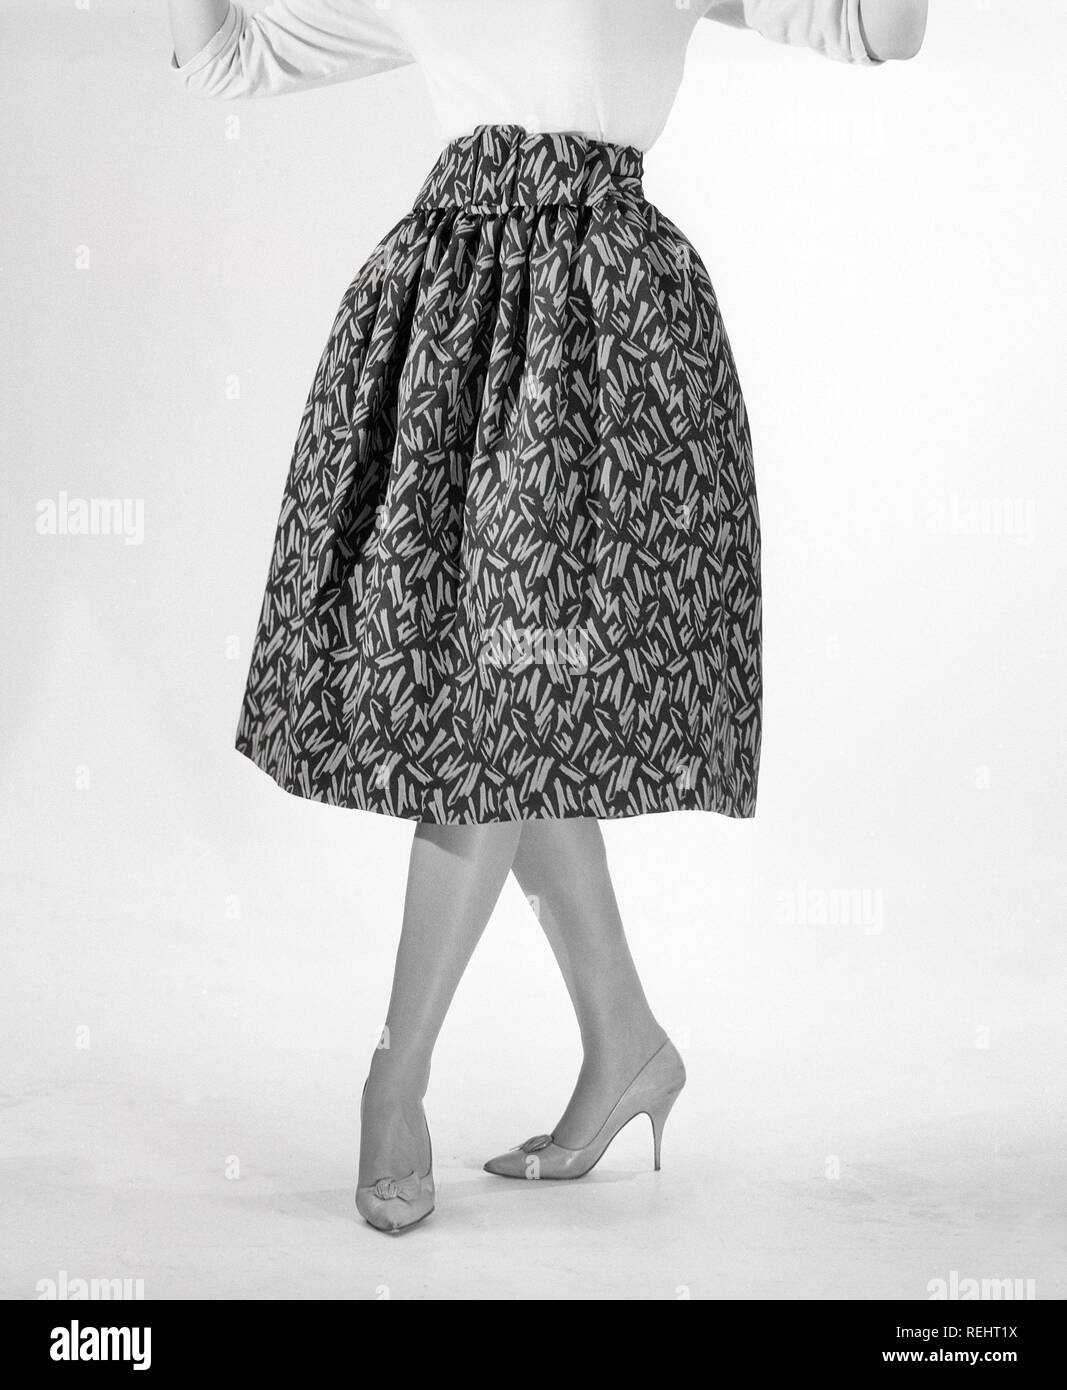 50er Jahre Mode Eine Junge Frau In Einem Typischen 50er Jahre Kleid Einen Weiten Rock Kleid Mit Einem 50 S Patterened Gewebe Schweden 1950 Foto Kristoffersson Ref Co 96 8 Stockfotografie Alamy